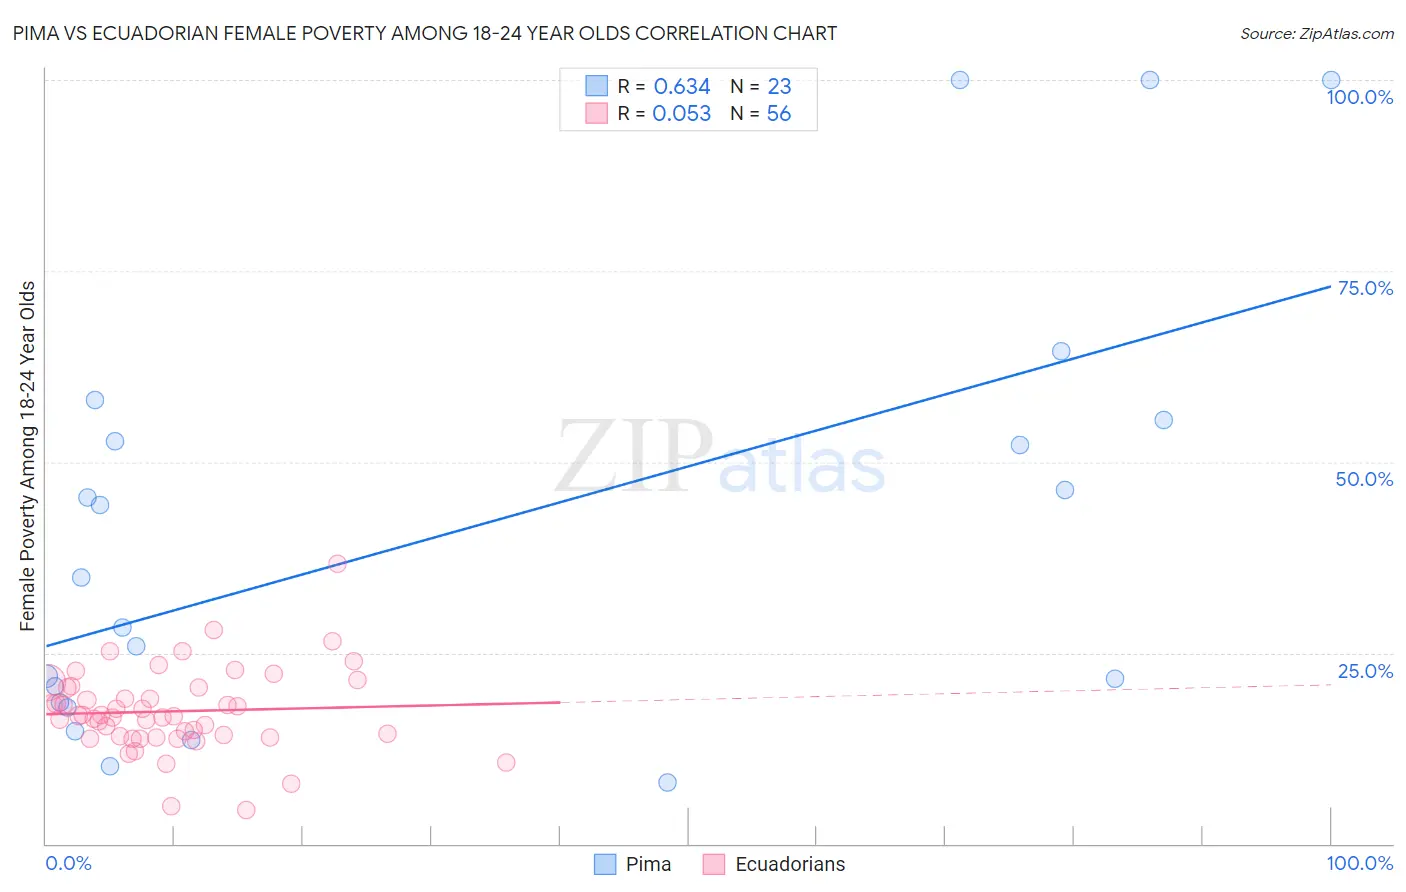 Pima vs Ecuadorian Female Poverty Among 18-24 Year Olds